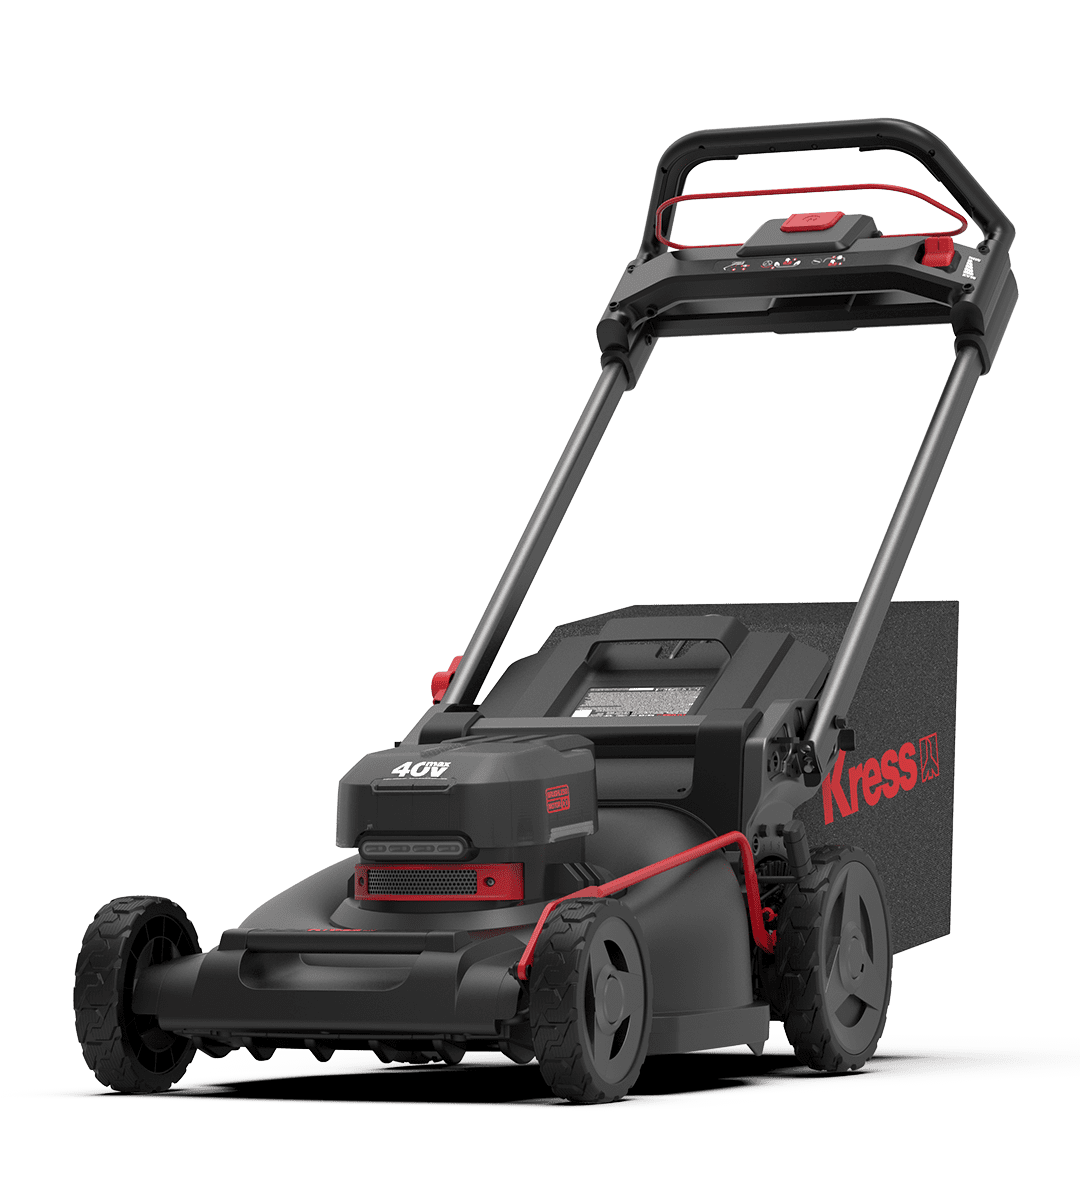 Kress Commercial 40 V 21 in self-propelled brushless mower